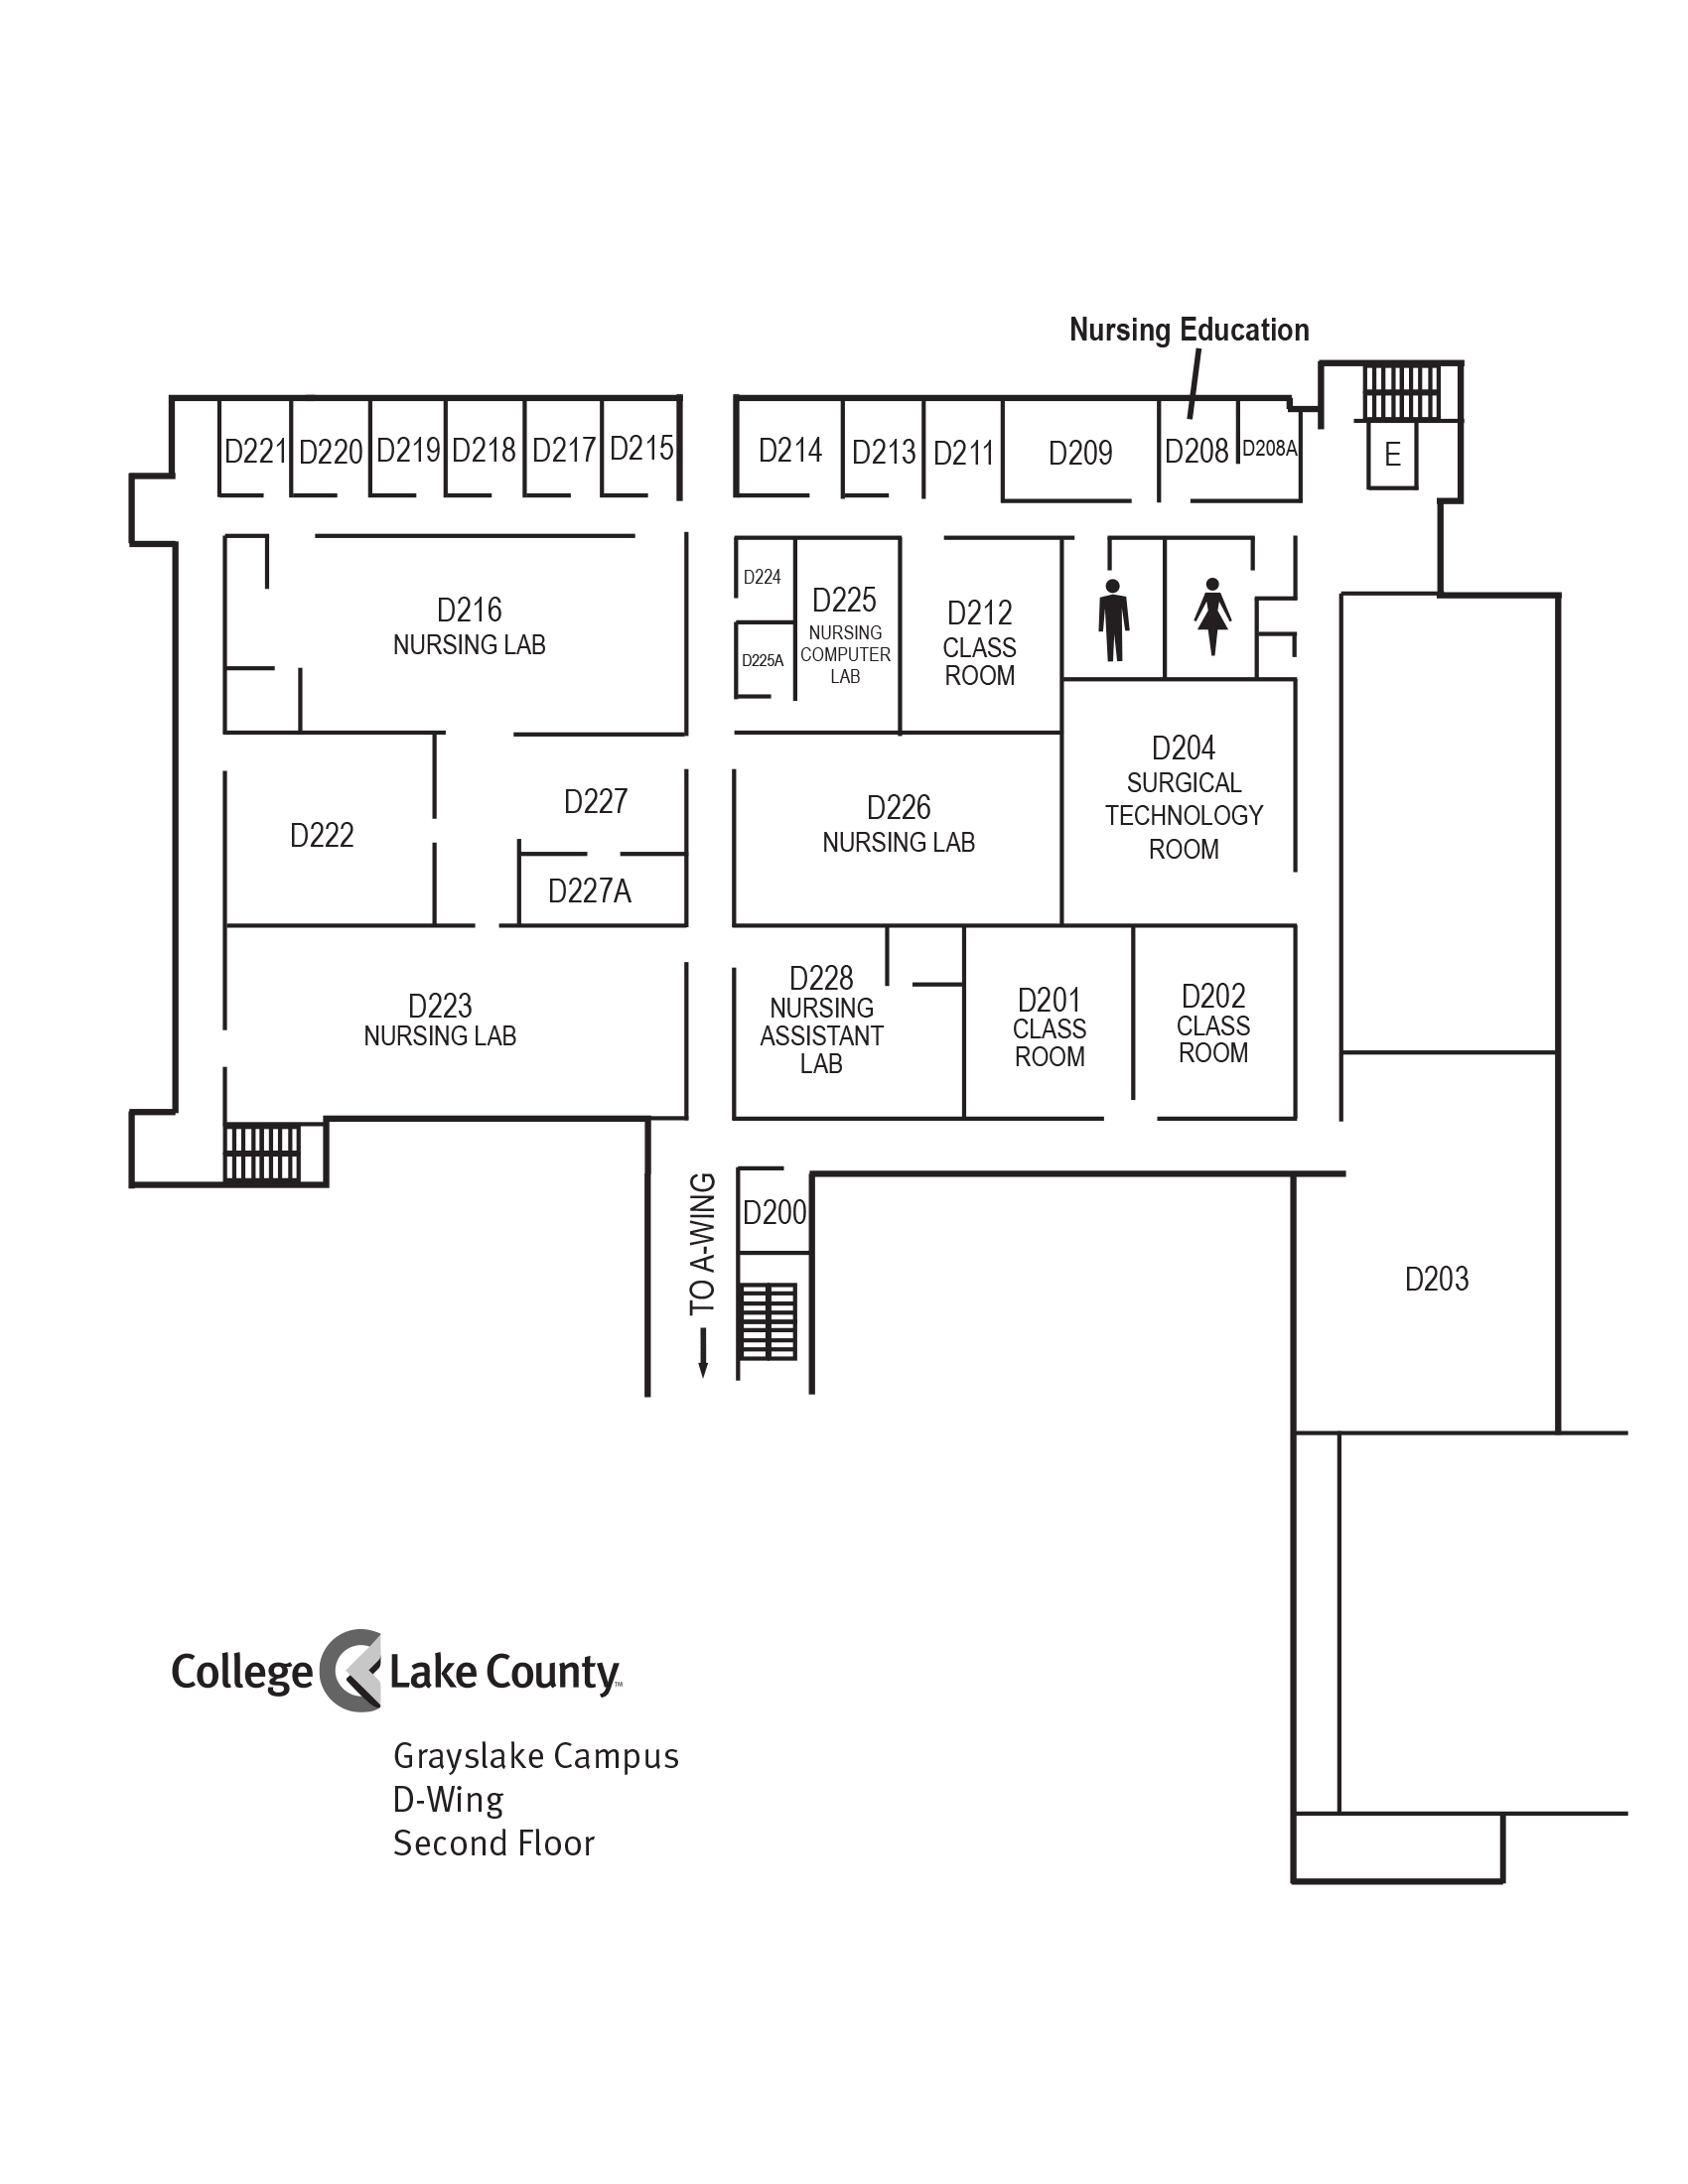 D-Wing Floor 2